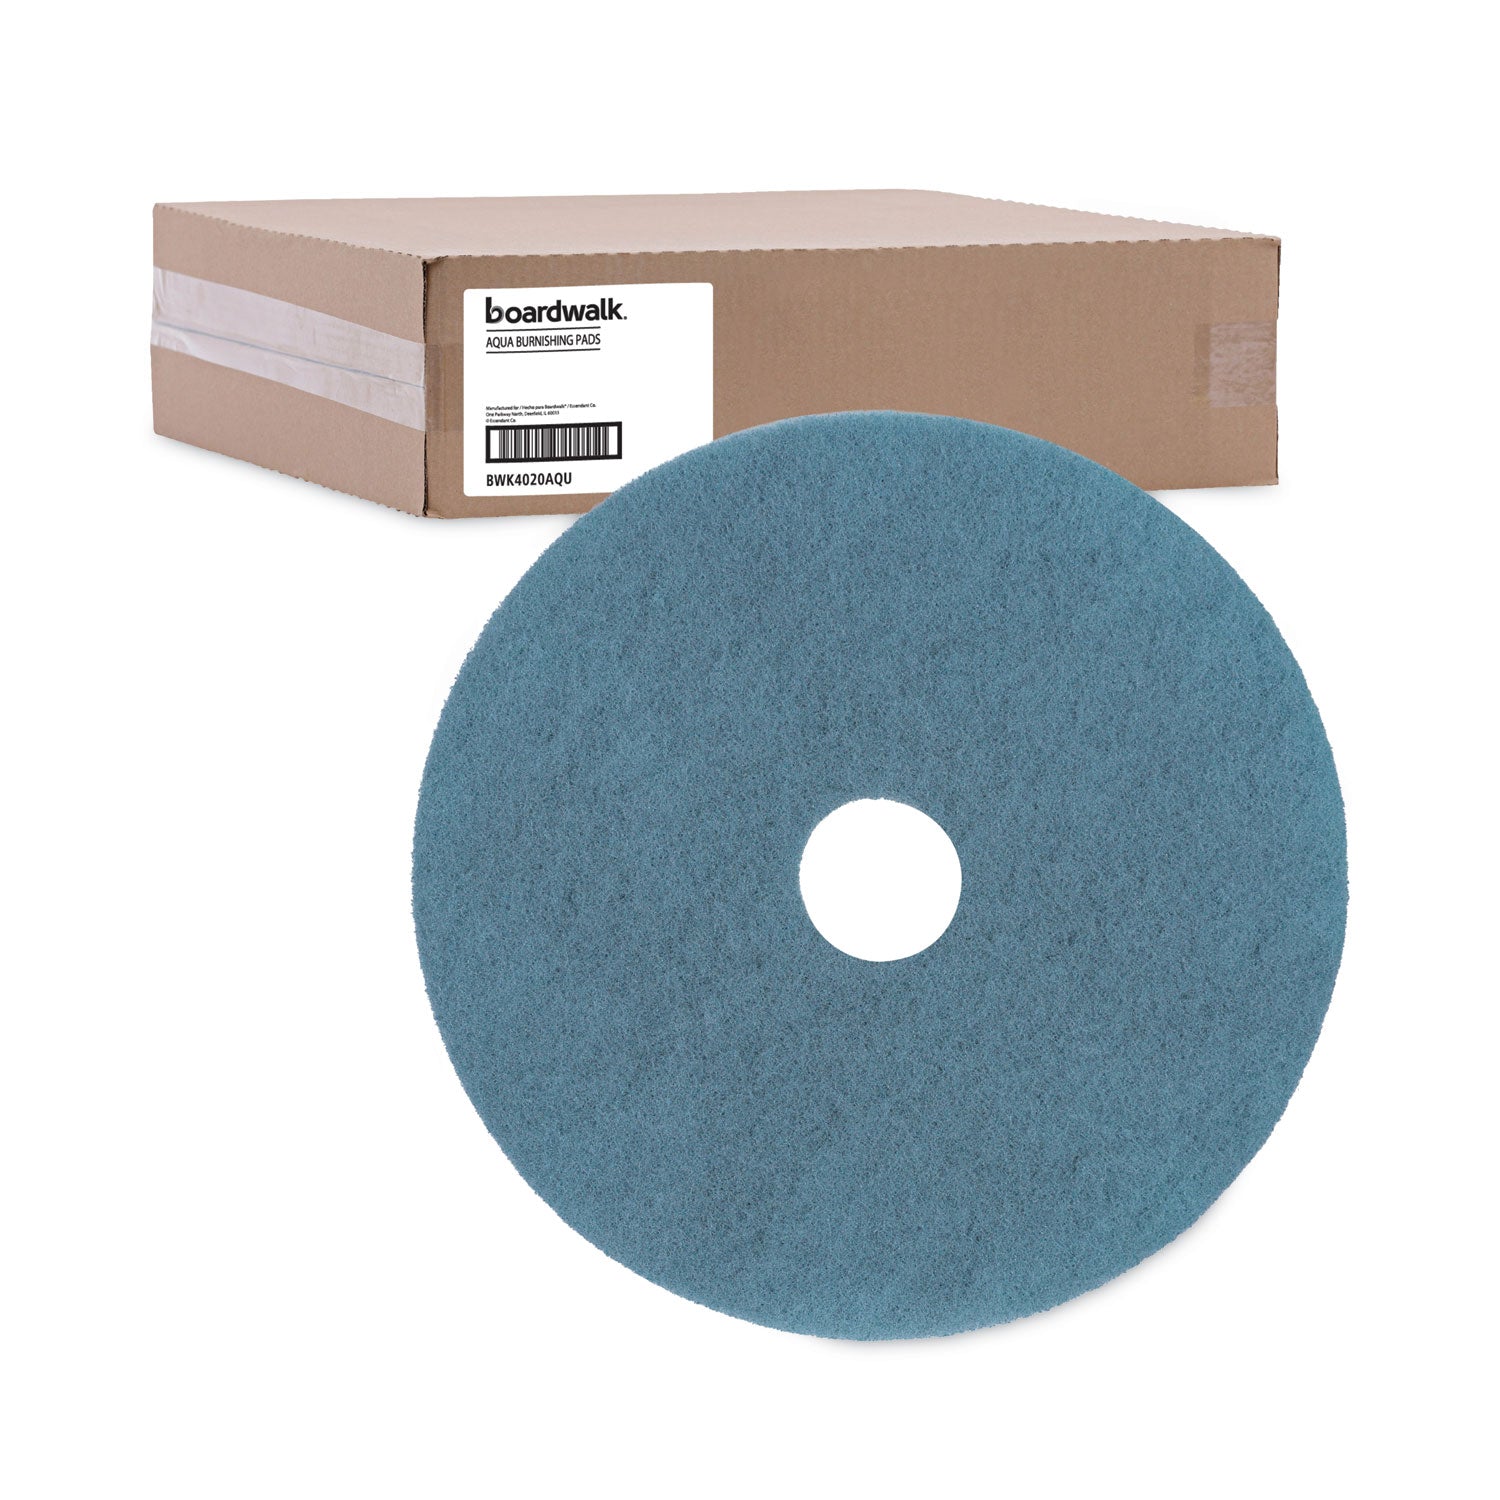 burnishing-floor-pads-20-diameter-aqua-5-carton_bwk4020aqu - 5